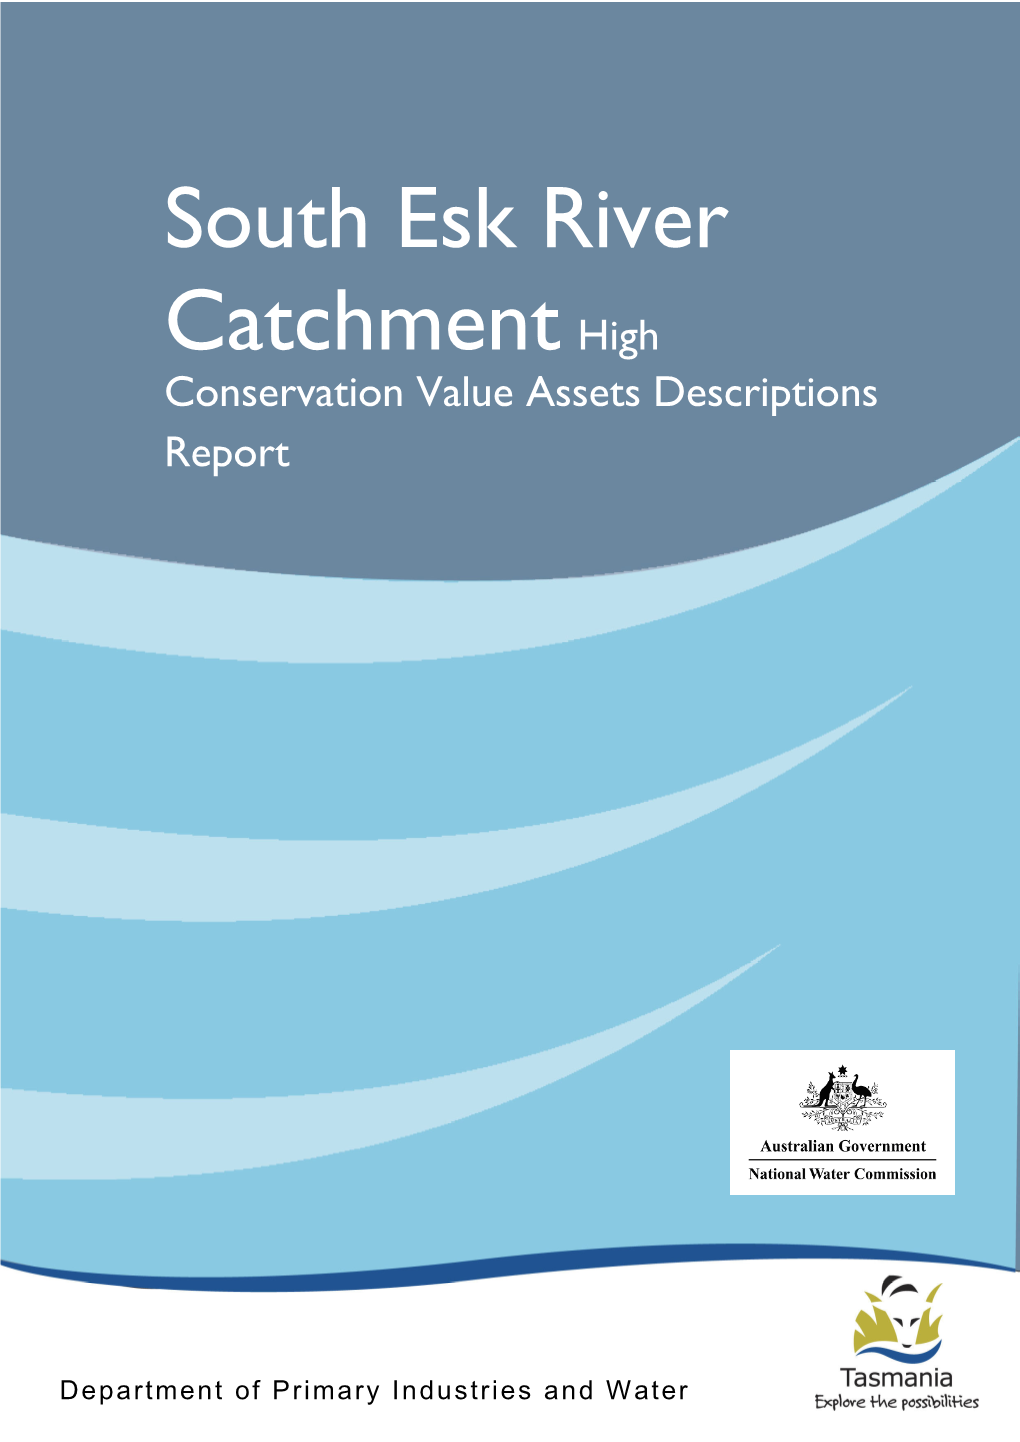 South Esk River Catchment High Conservation Value Assets Descriptions Report